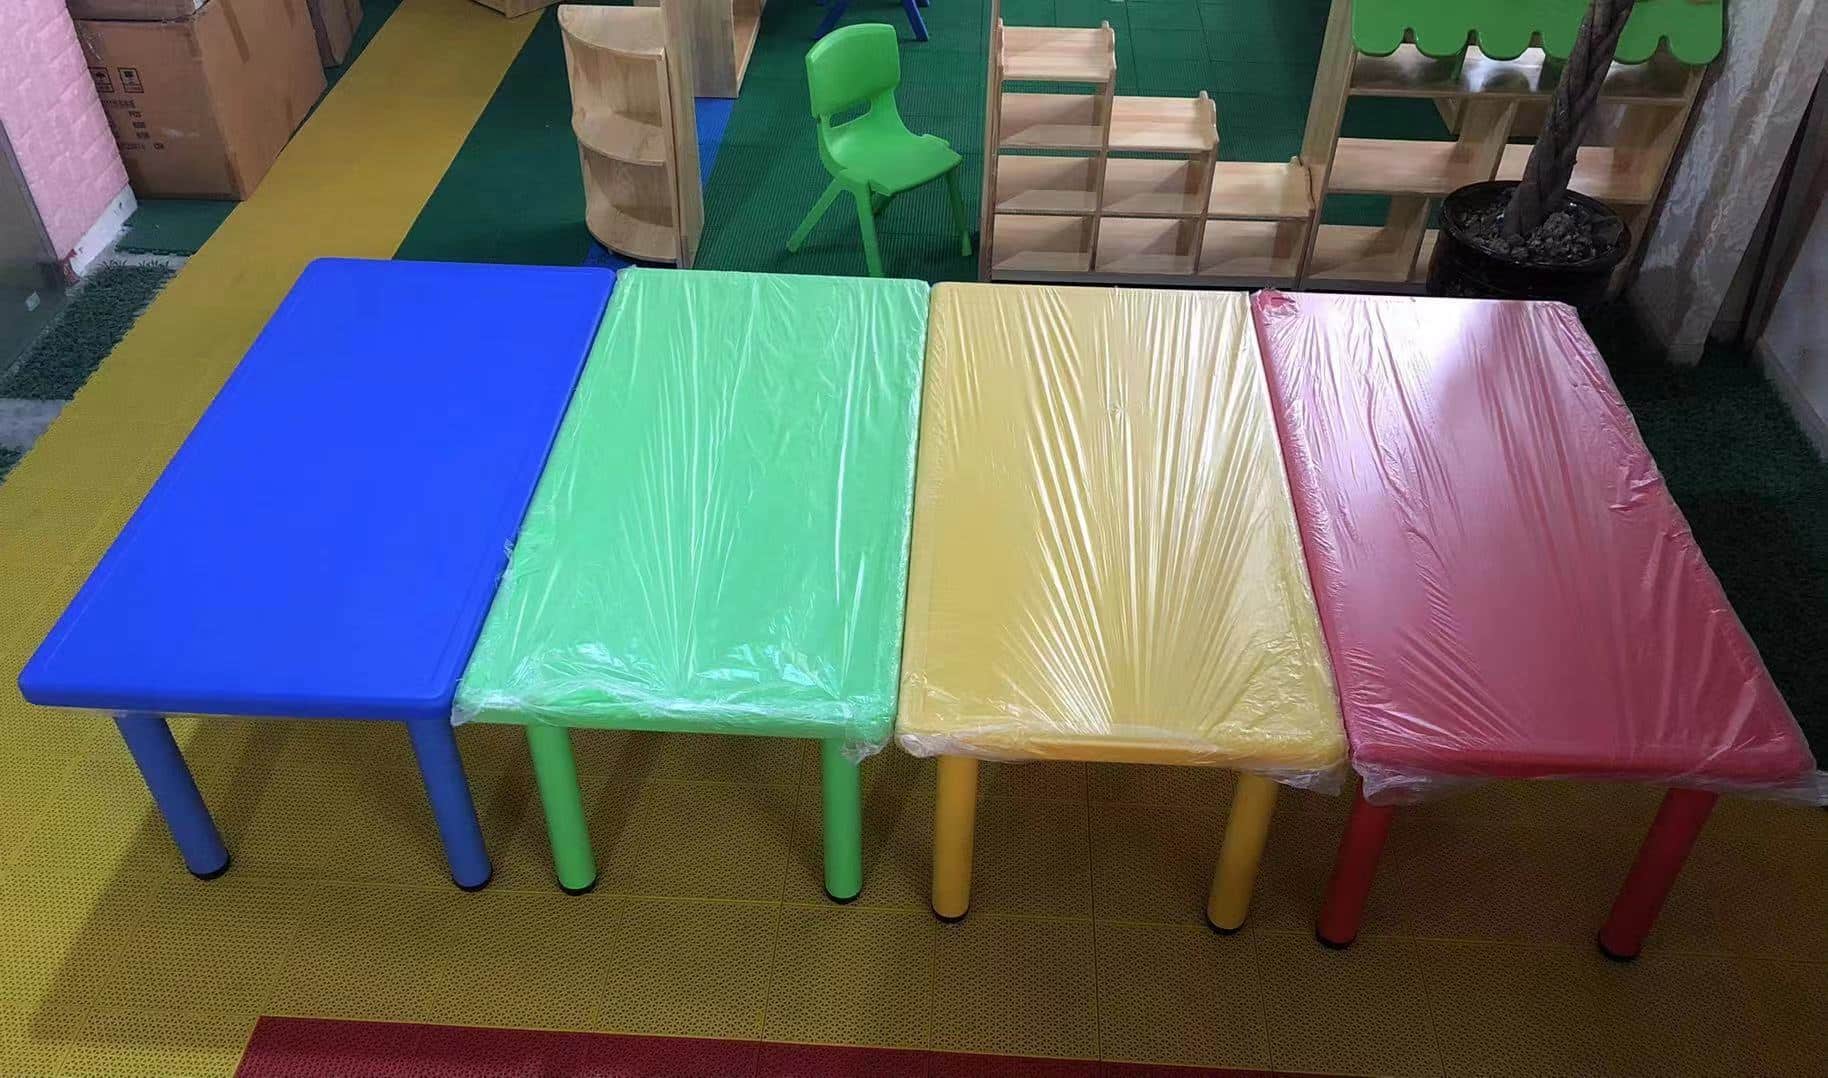 成都幼儿园桌椅